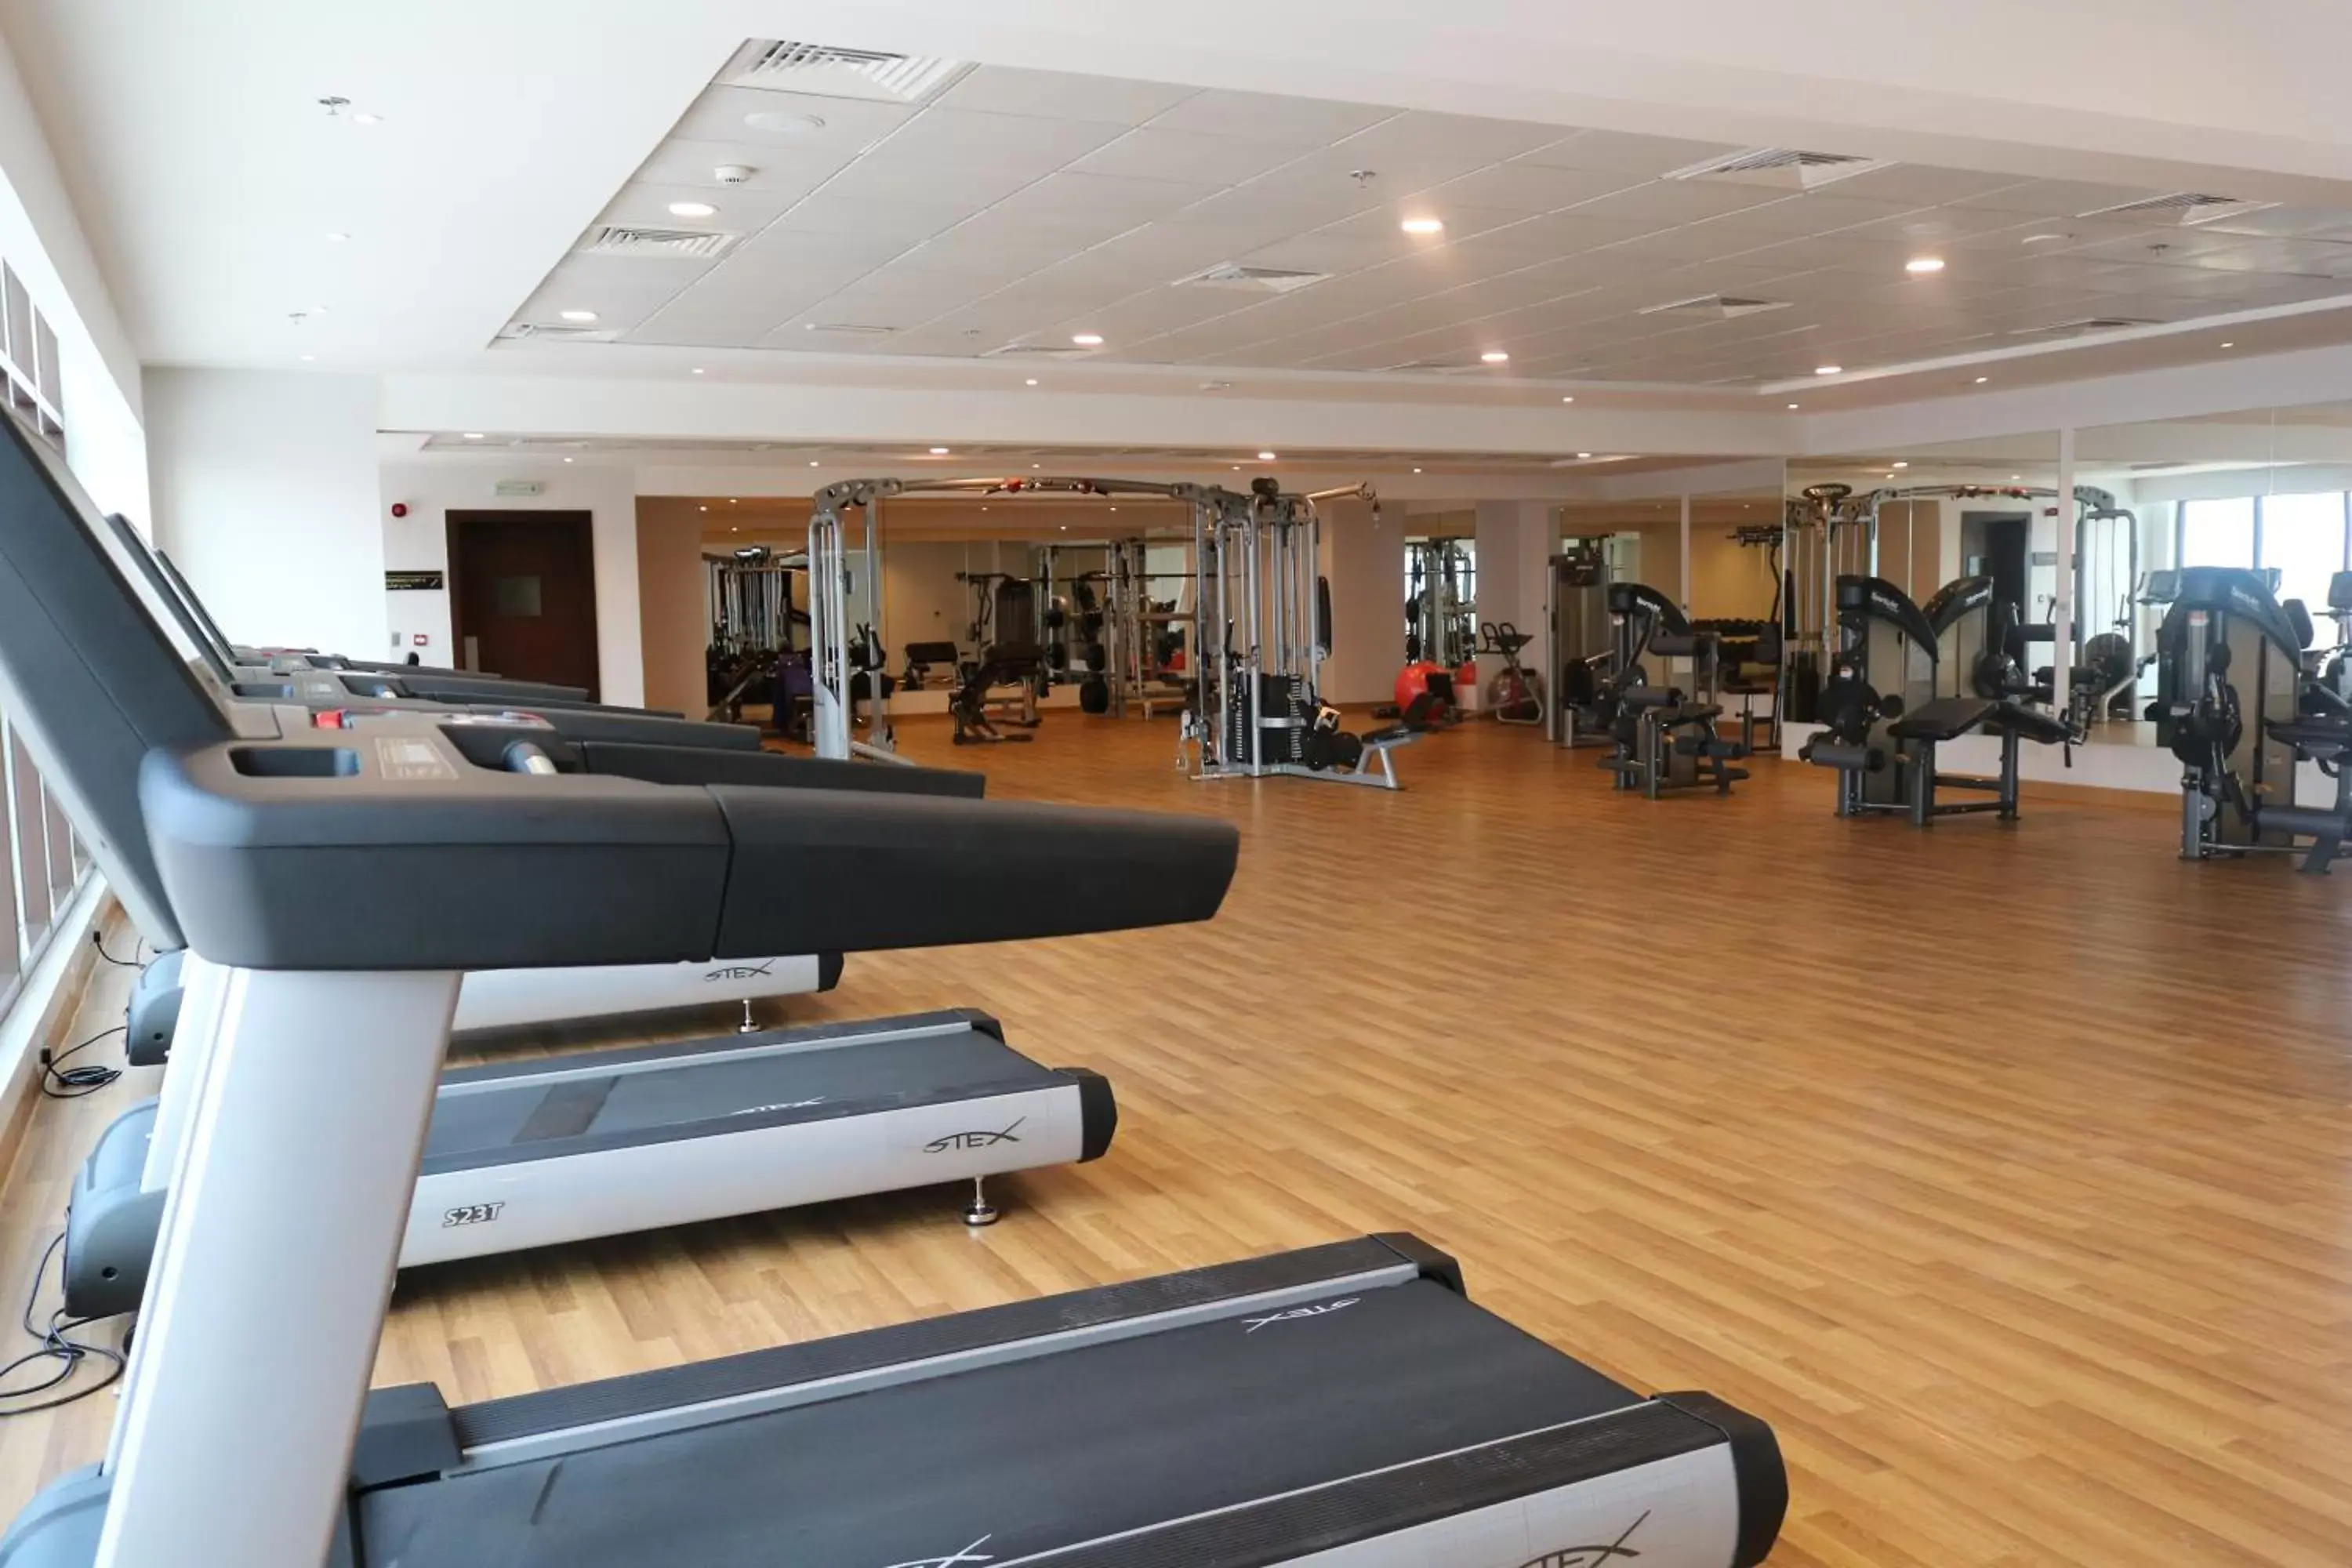 Fitness centre/facilities, Fitness Center/Facilities in Al Bahar Hotel & Resort